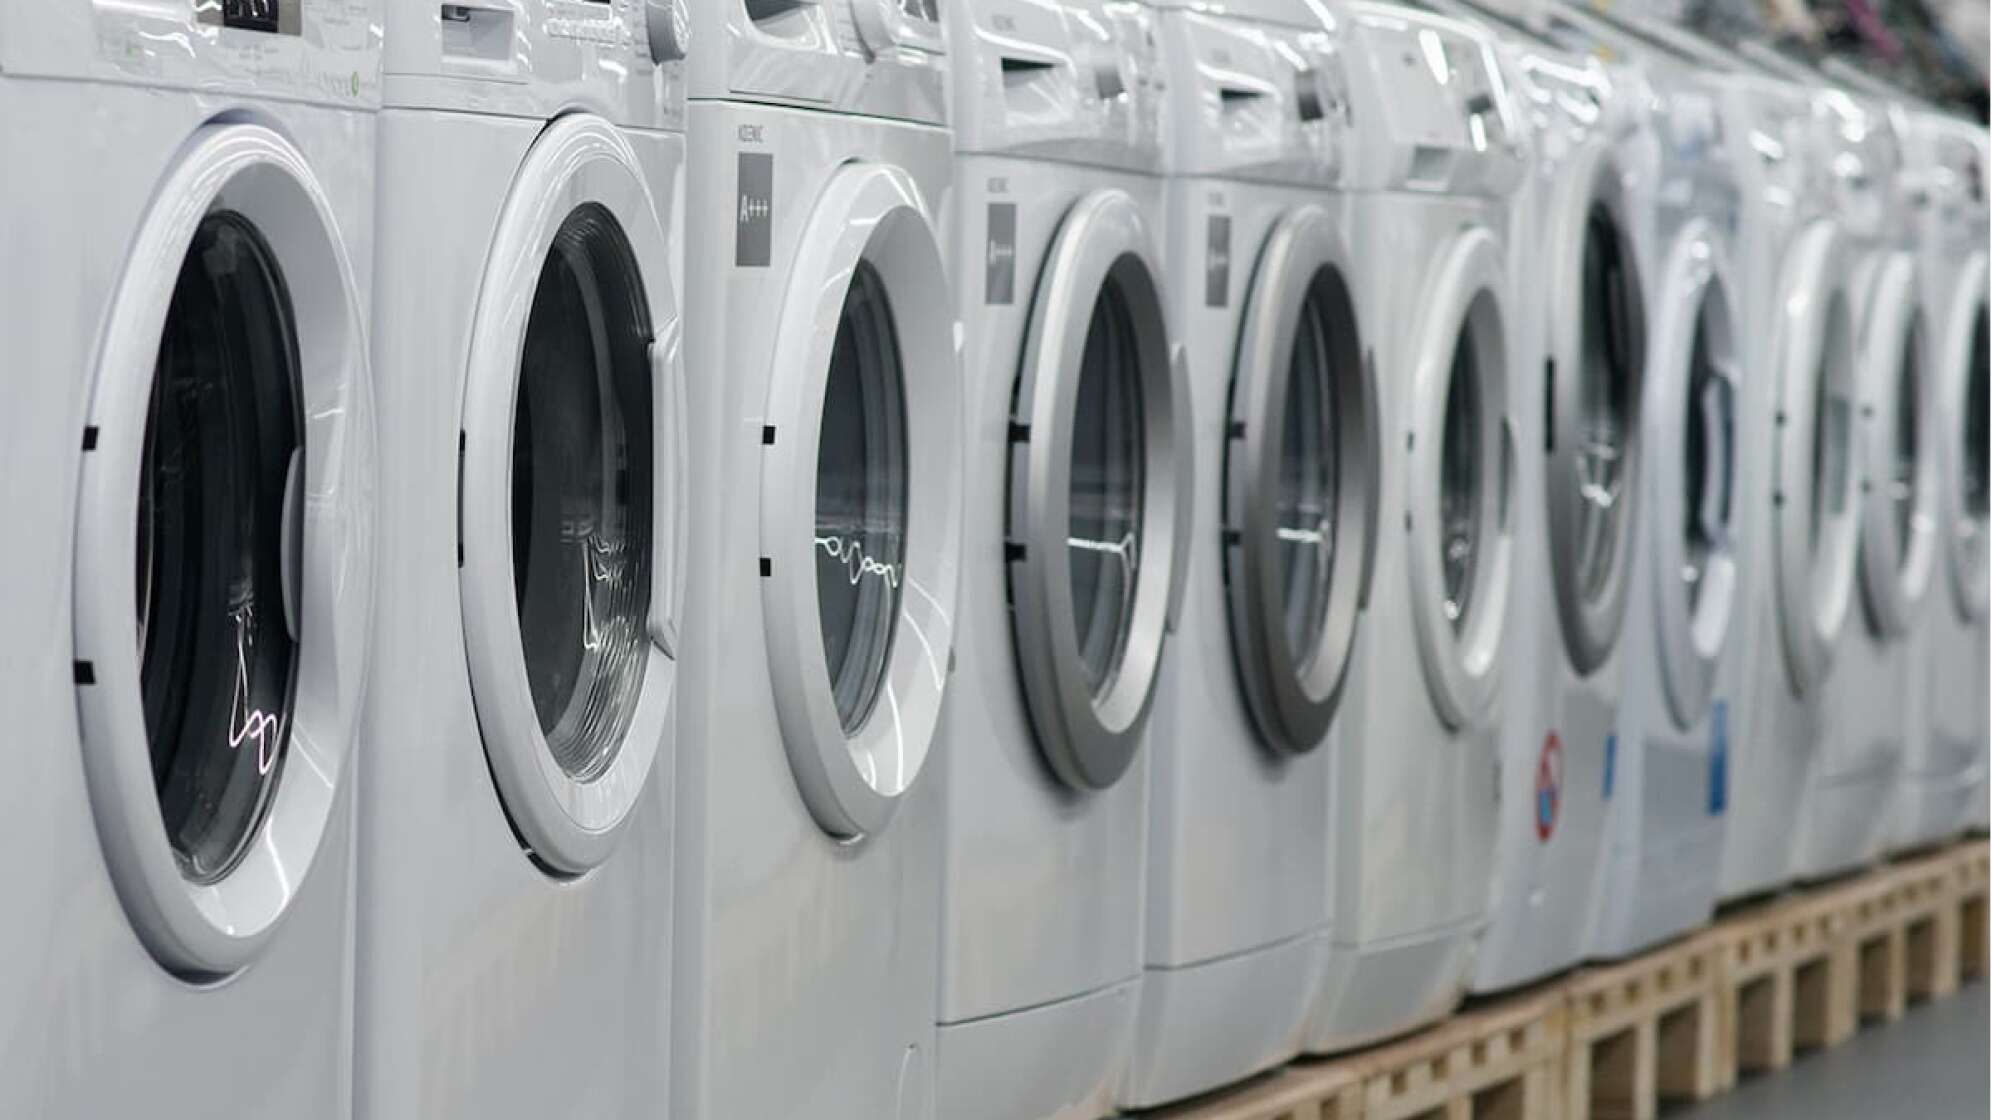 Mehrere Waschmaschinen stehen in einer Reihe